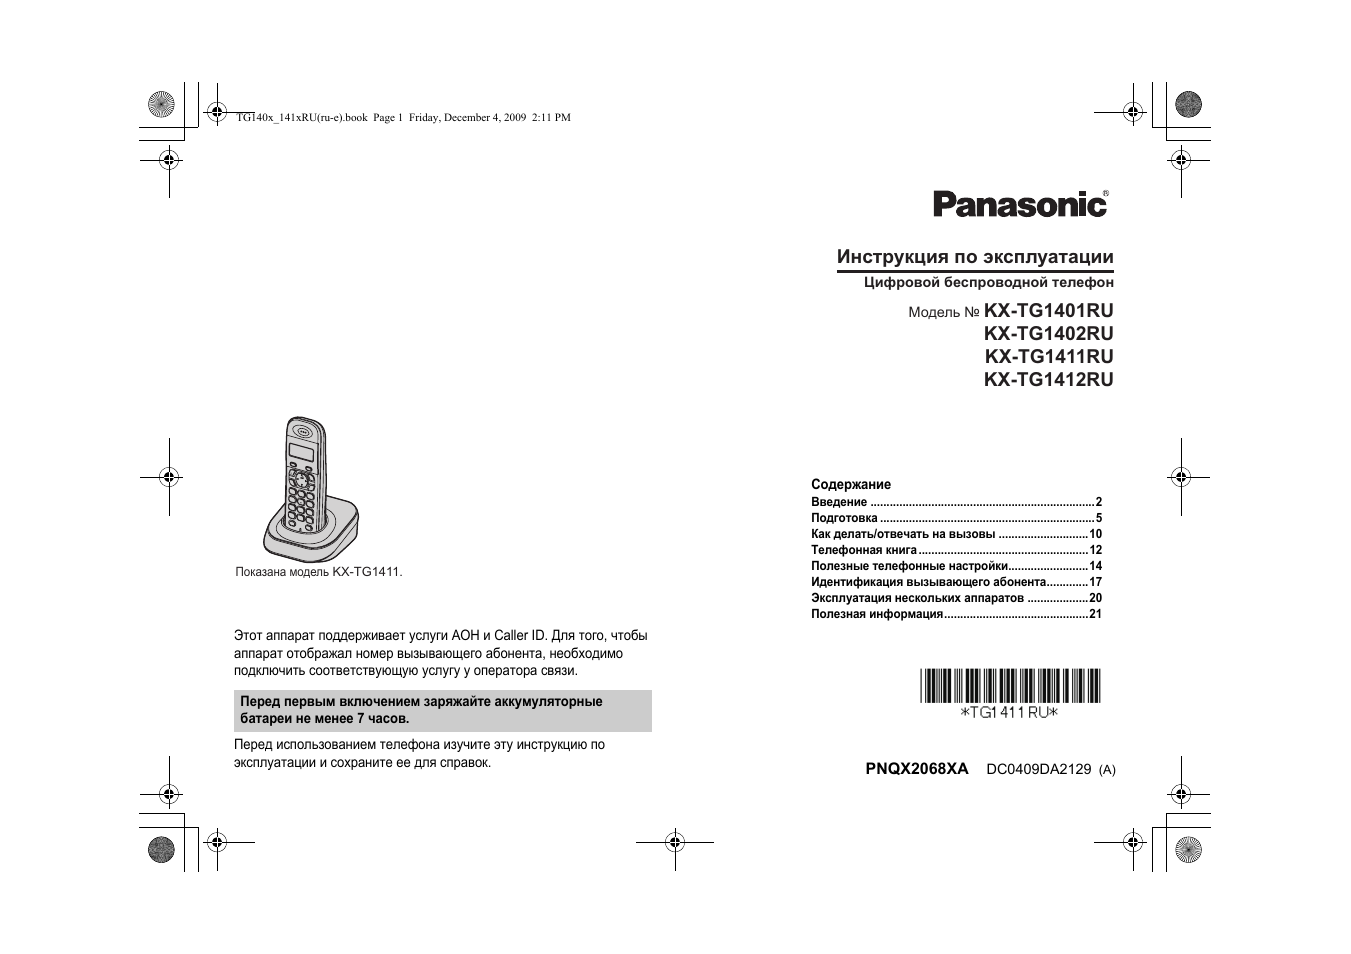 Инструкция по эксплуатации Panasonic KX-TG1402 RU-3 | 28 страниц